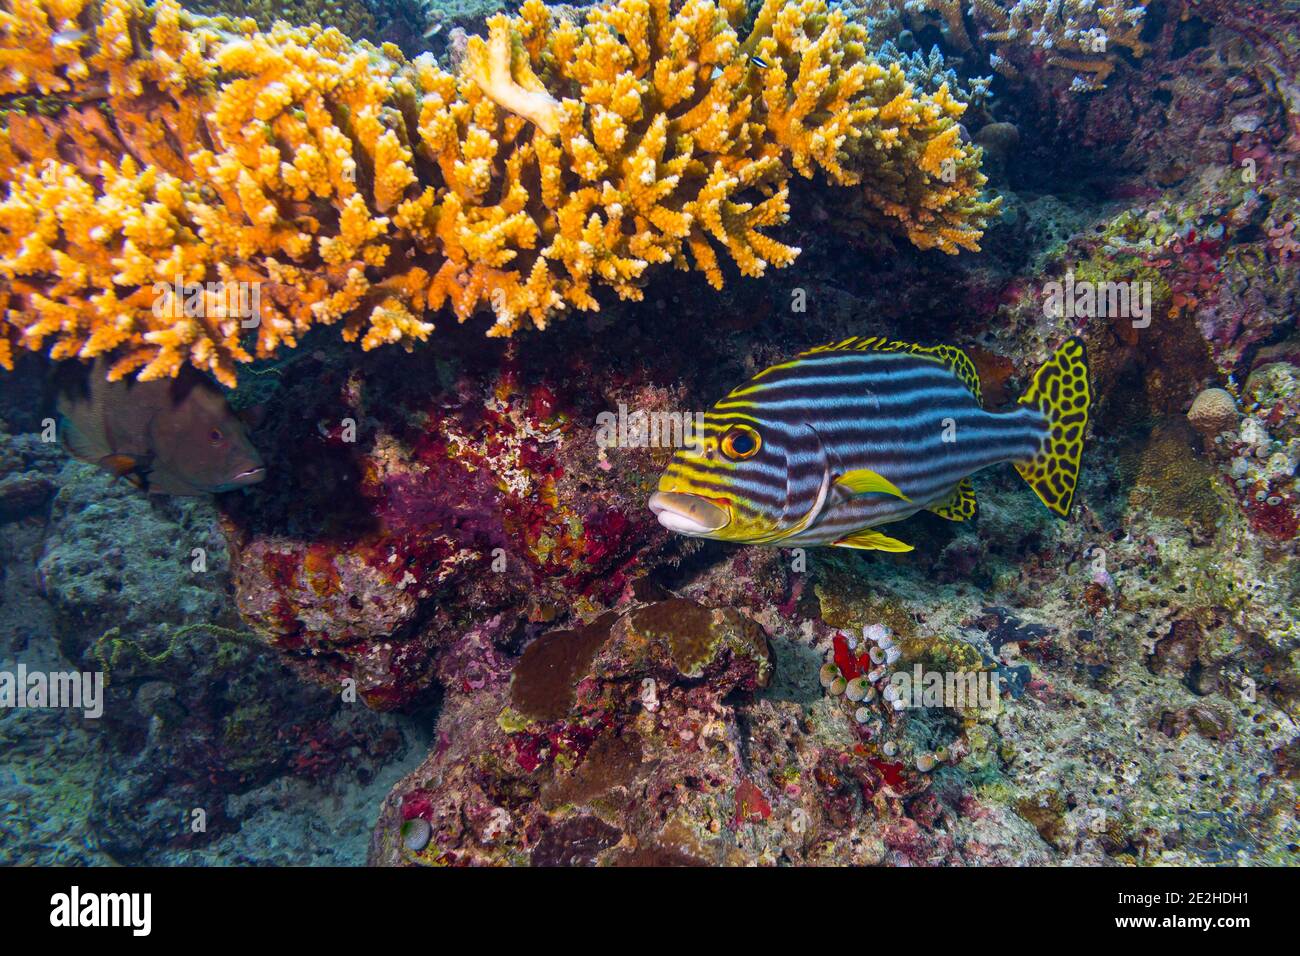 Plectorhinchus vittatus or the yellow indian ocean oriental sweetlips fish in colorful underwater coral reef. marine animal wildlife ocean sea backgro Stock Photo